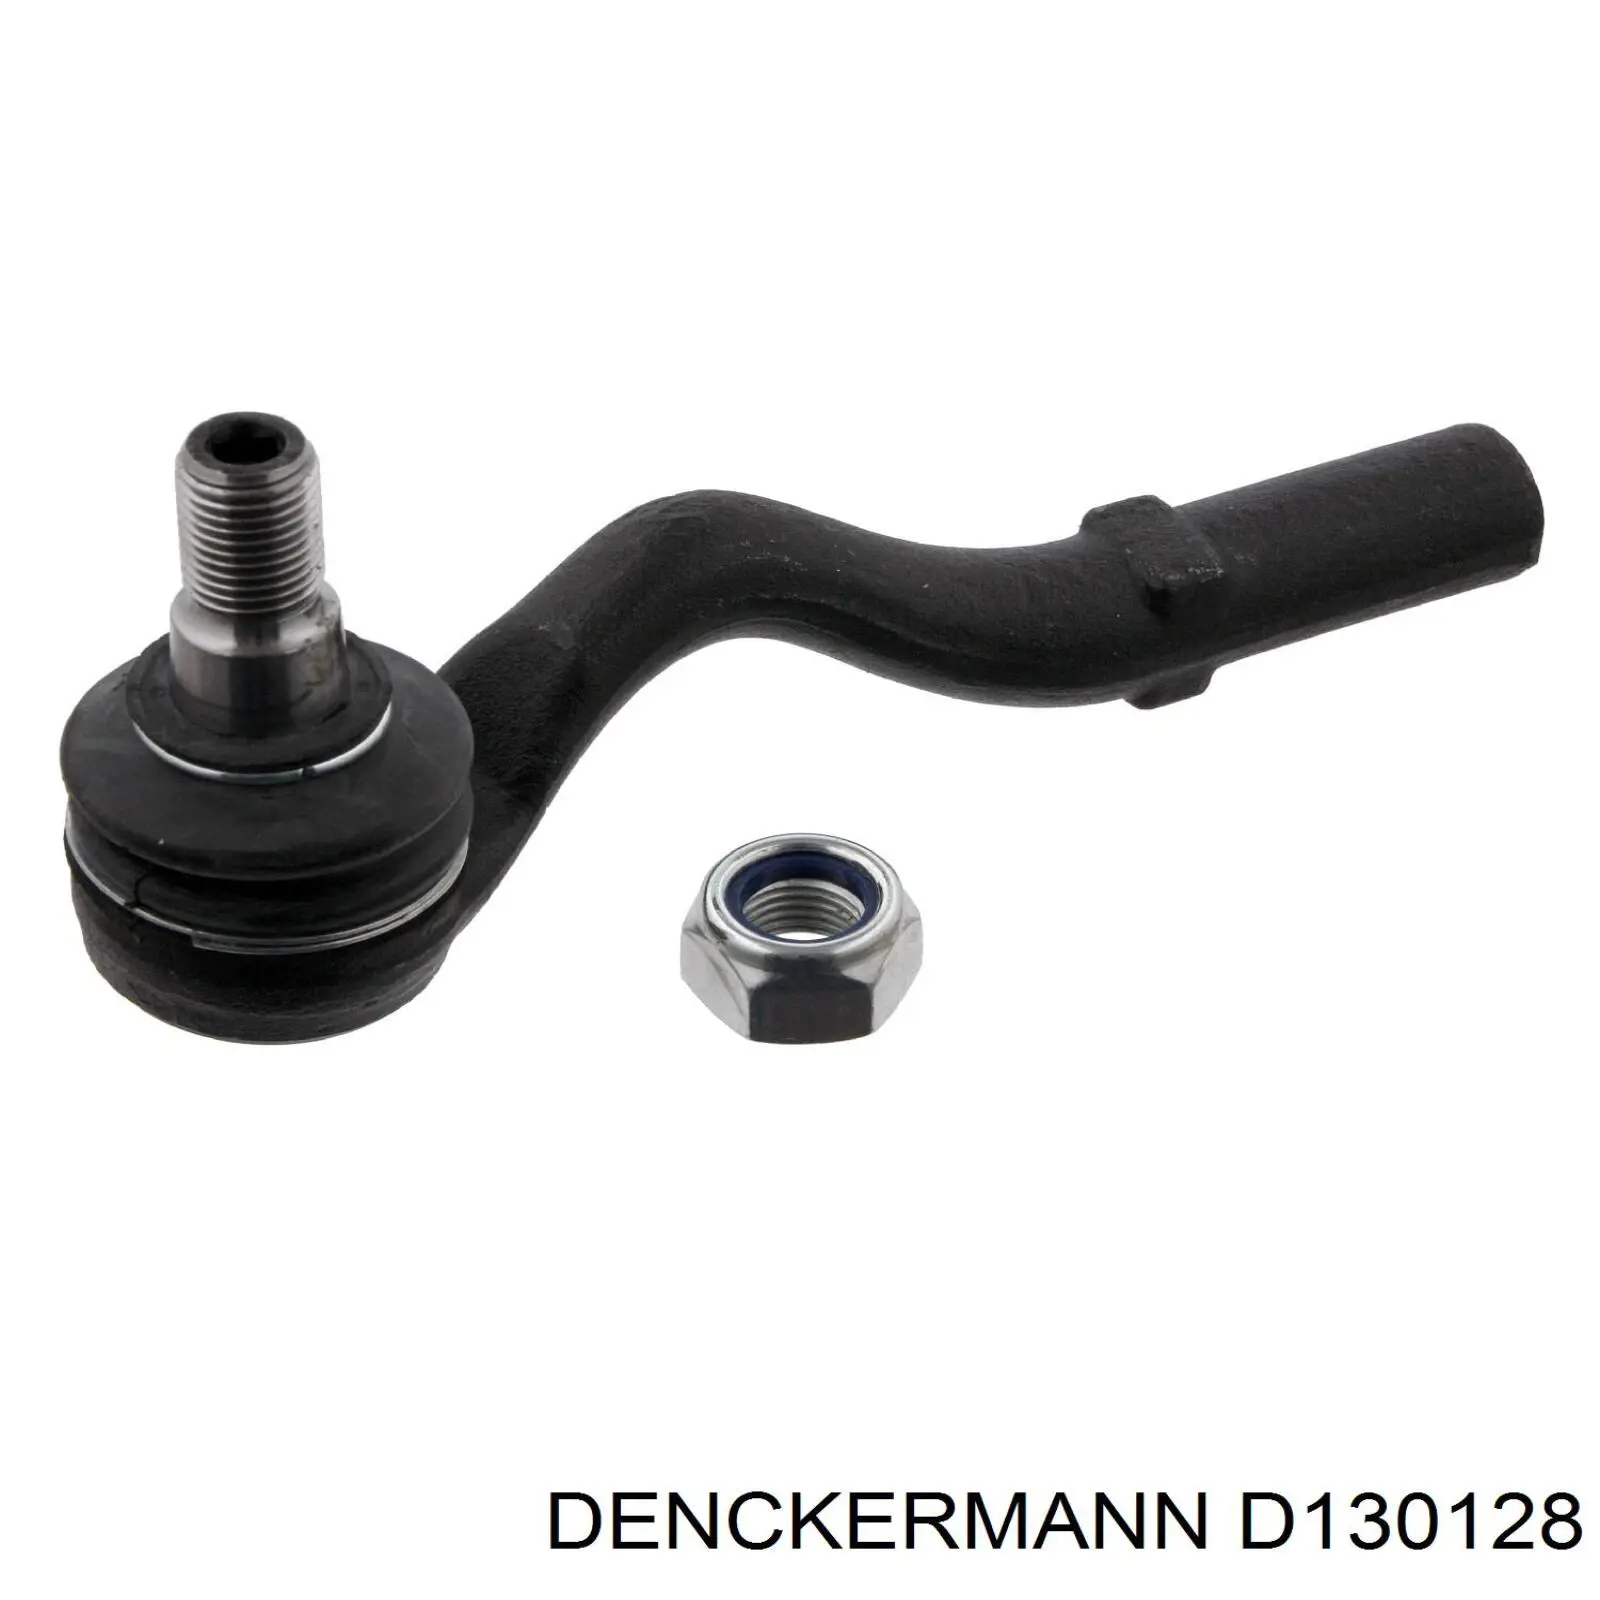 D130128 Denckermann rótula barra de acoplamiento exterior